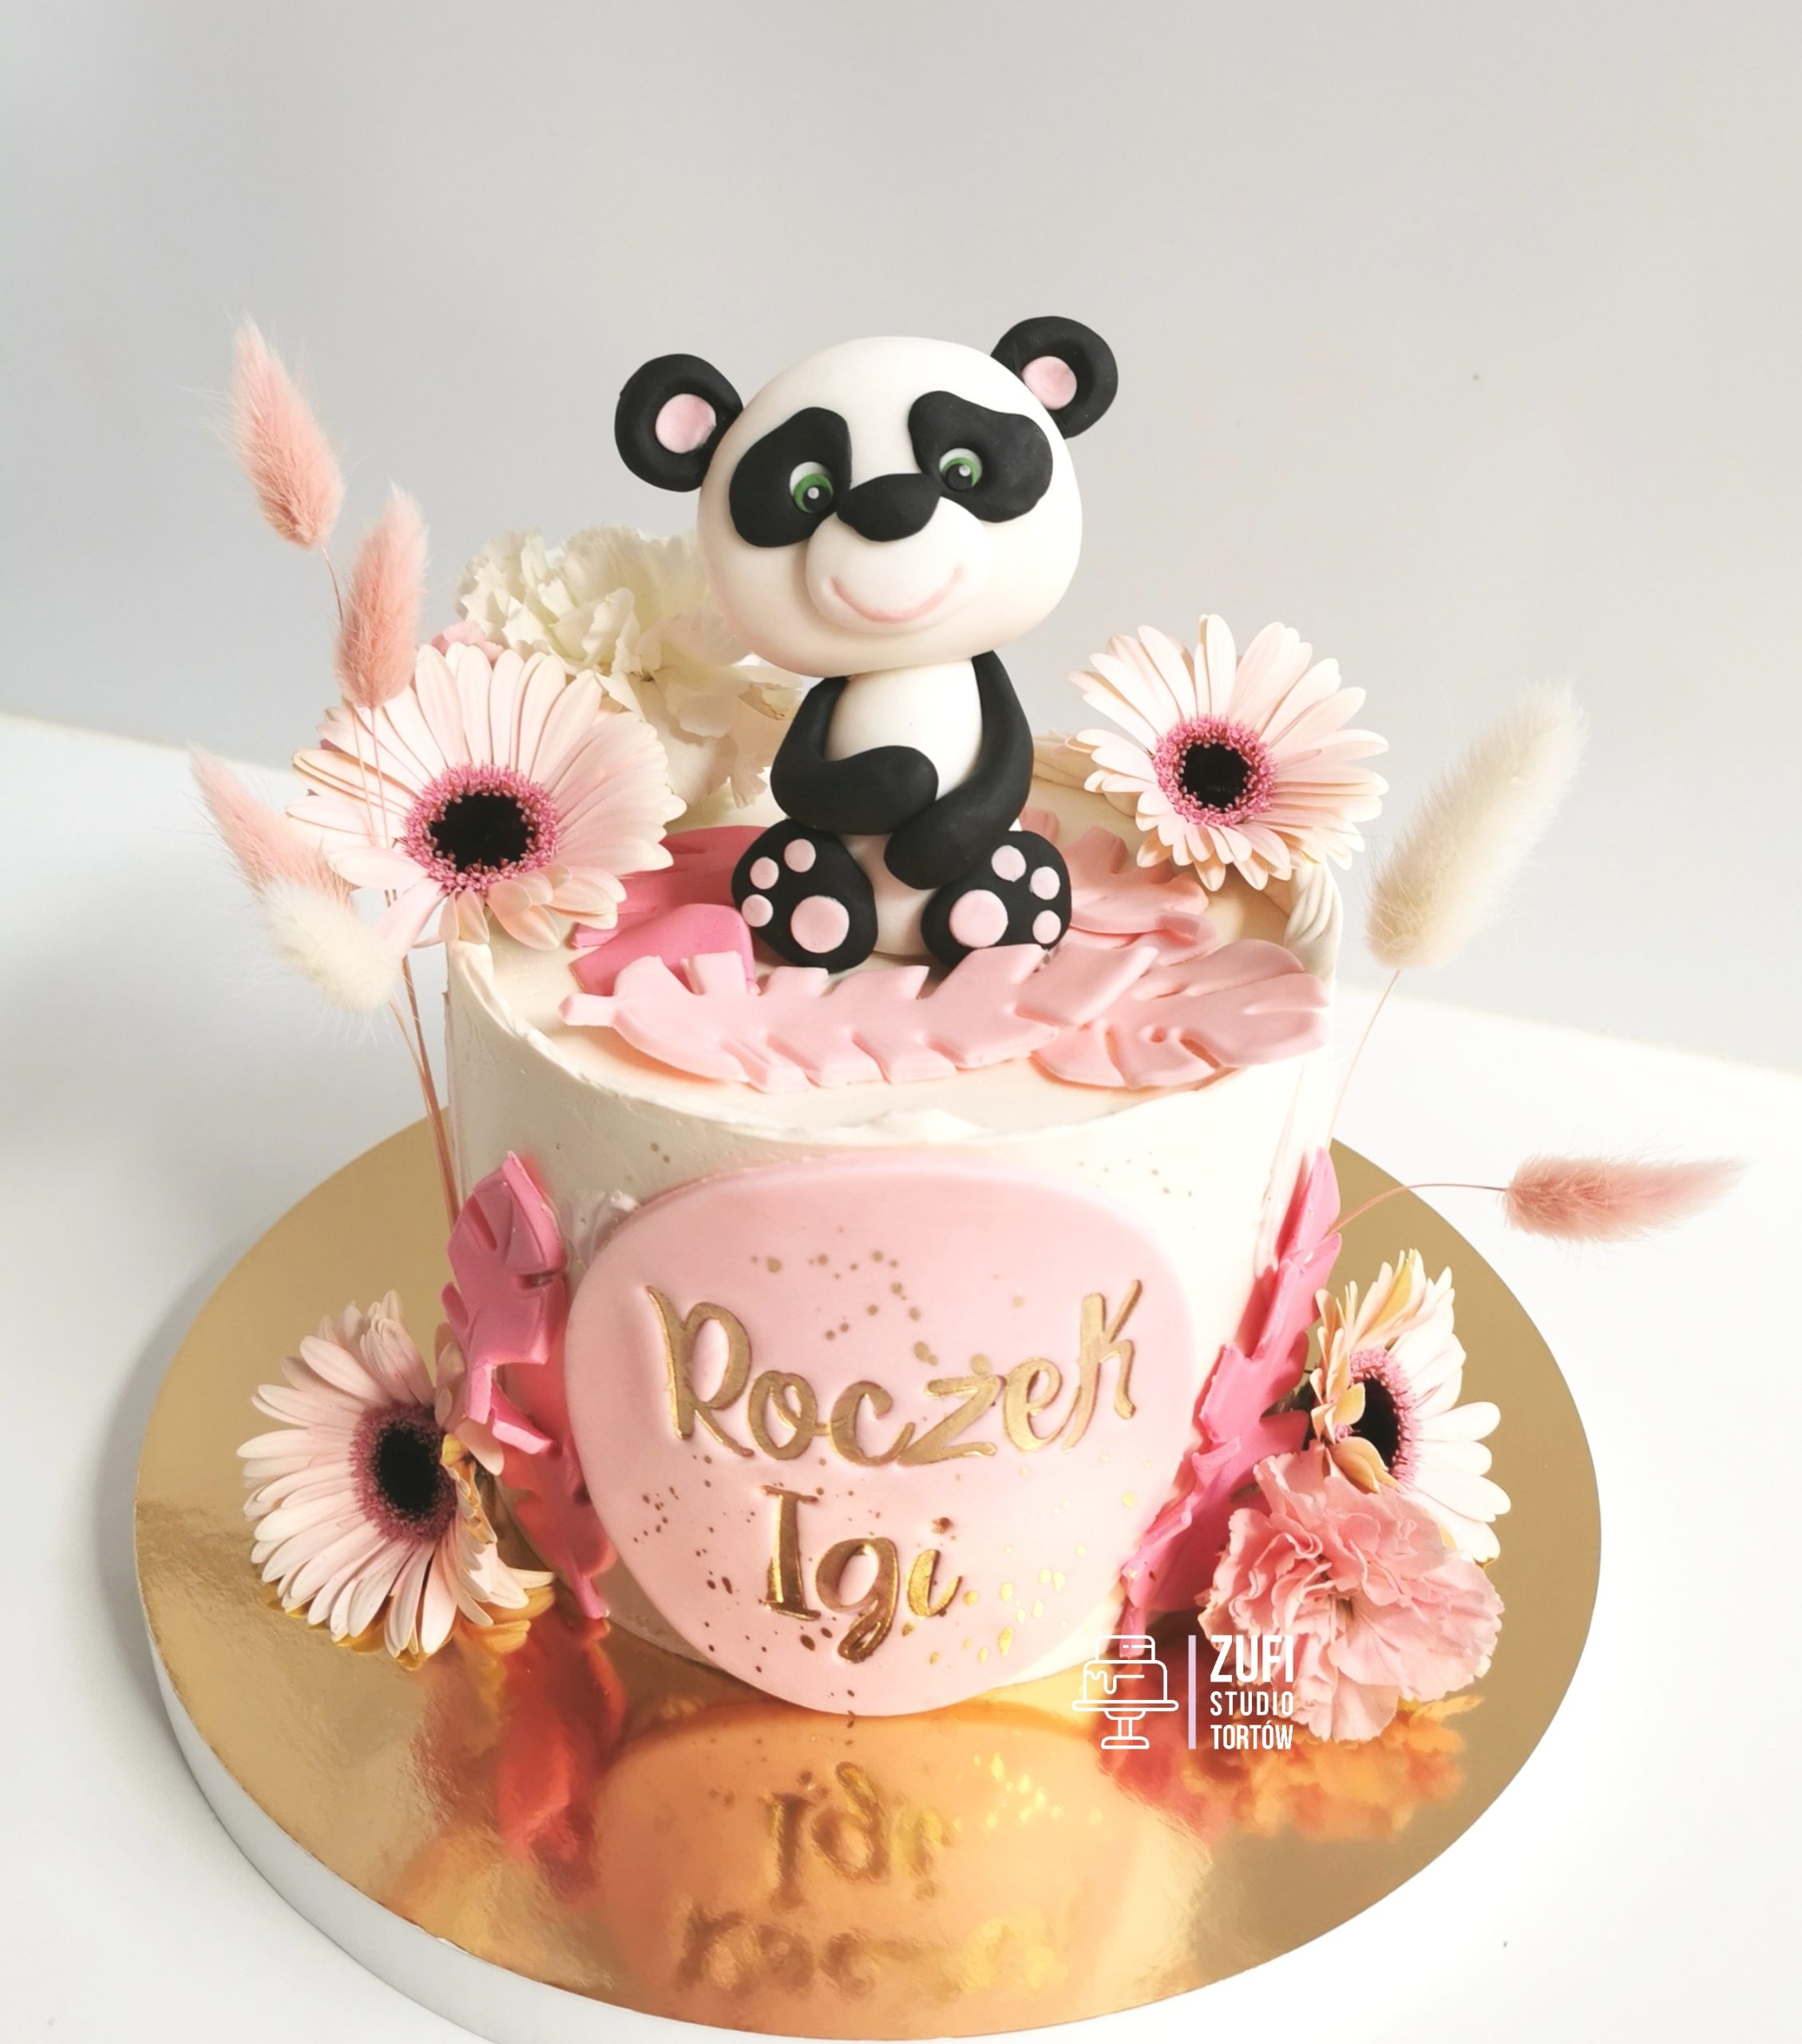 tort z pandą